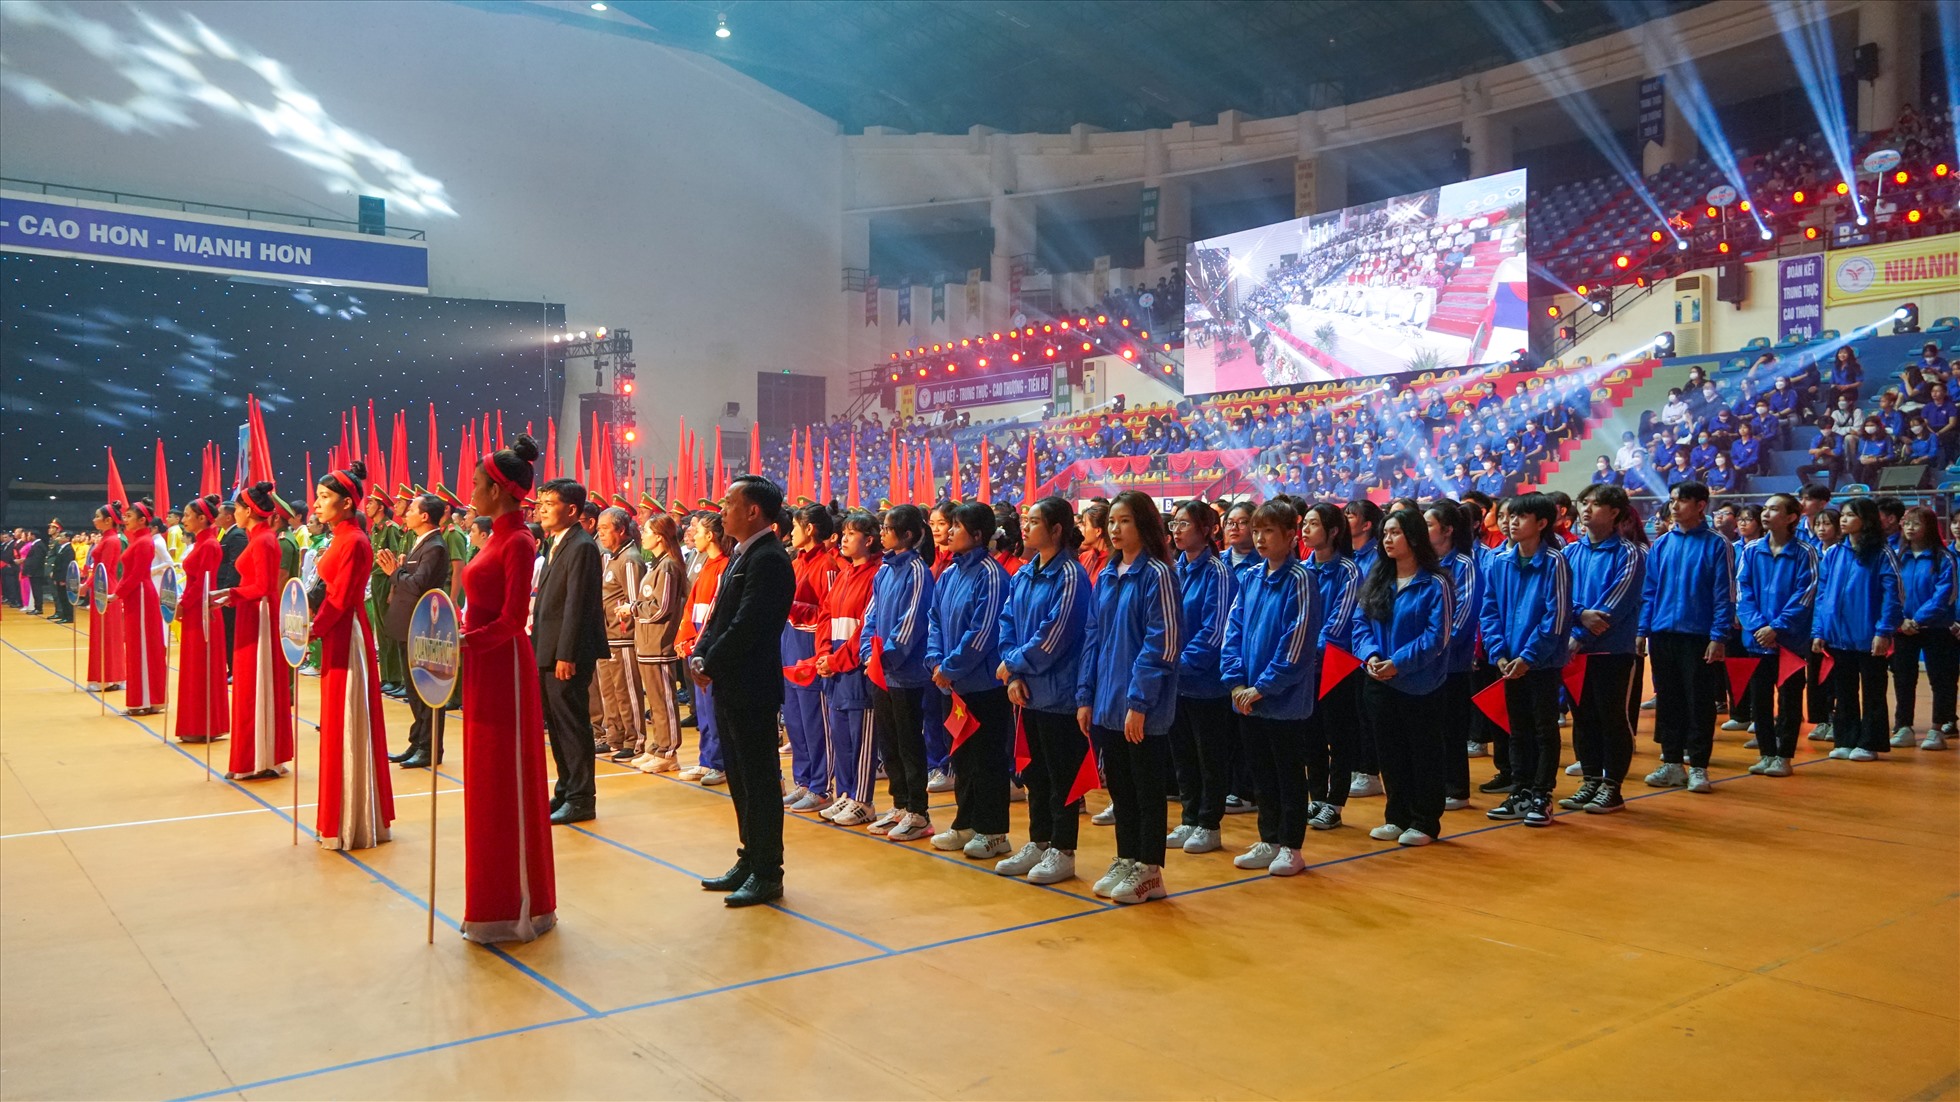 Trong năm 2022, ngành thể thao TP. Cần Thơ được Bộ Văn hóa, thể thao và Du lịch triệu tập 20 VĐV vào đội tuyển quốc gia tham dự Đại hội Thể thao Đông Nam Á (SEA Games) lần thứ 31 do Việt Nam đăng cai tổ chức và Đại hội Thể thao người khuyết tật Đông Nam Á lần thứ 11 tại Indonesia, với kết quả đạt 10 HCV, 5 HCB và 3 HCĐ.